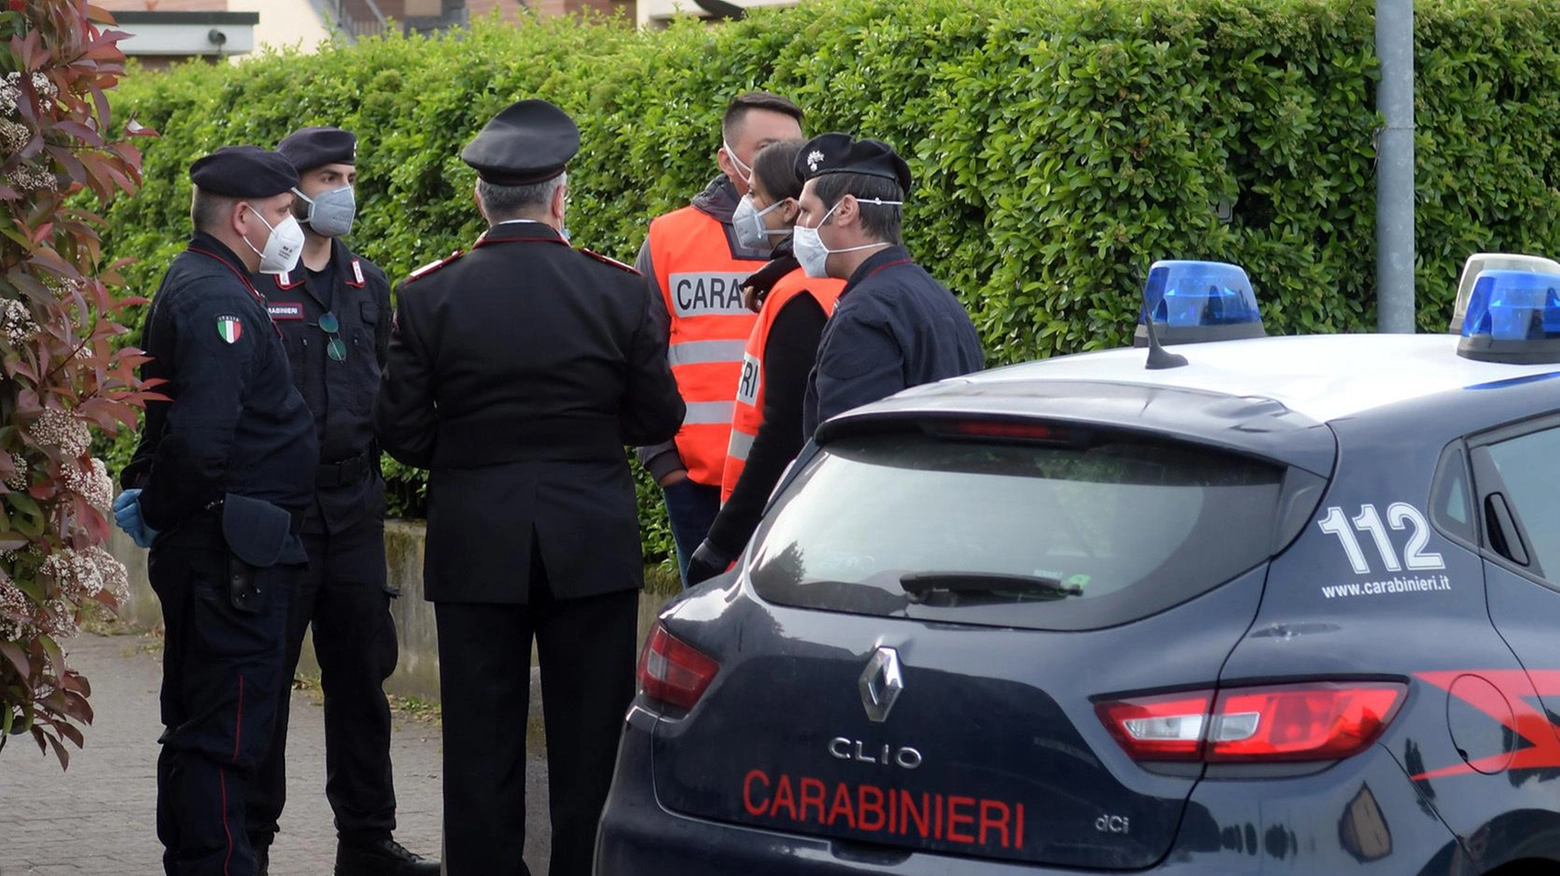 Dopo aver ucciso la madre Capano si presentò ai carabinieri